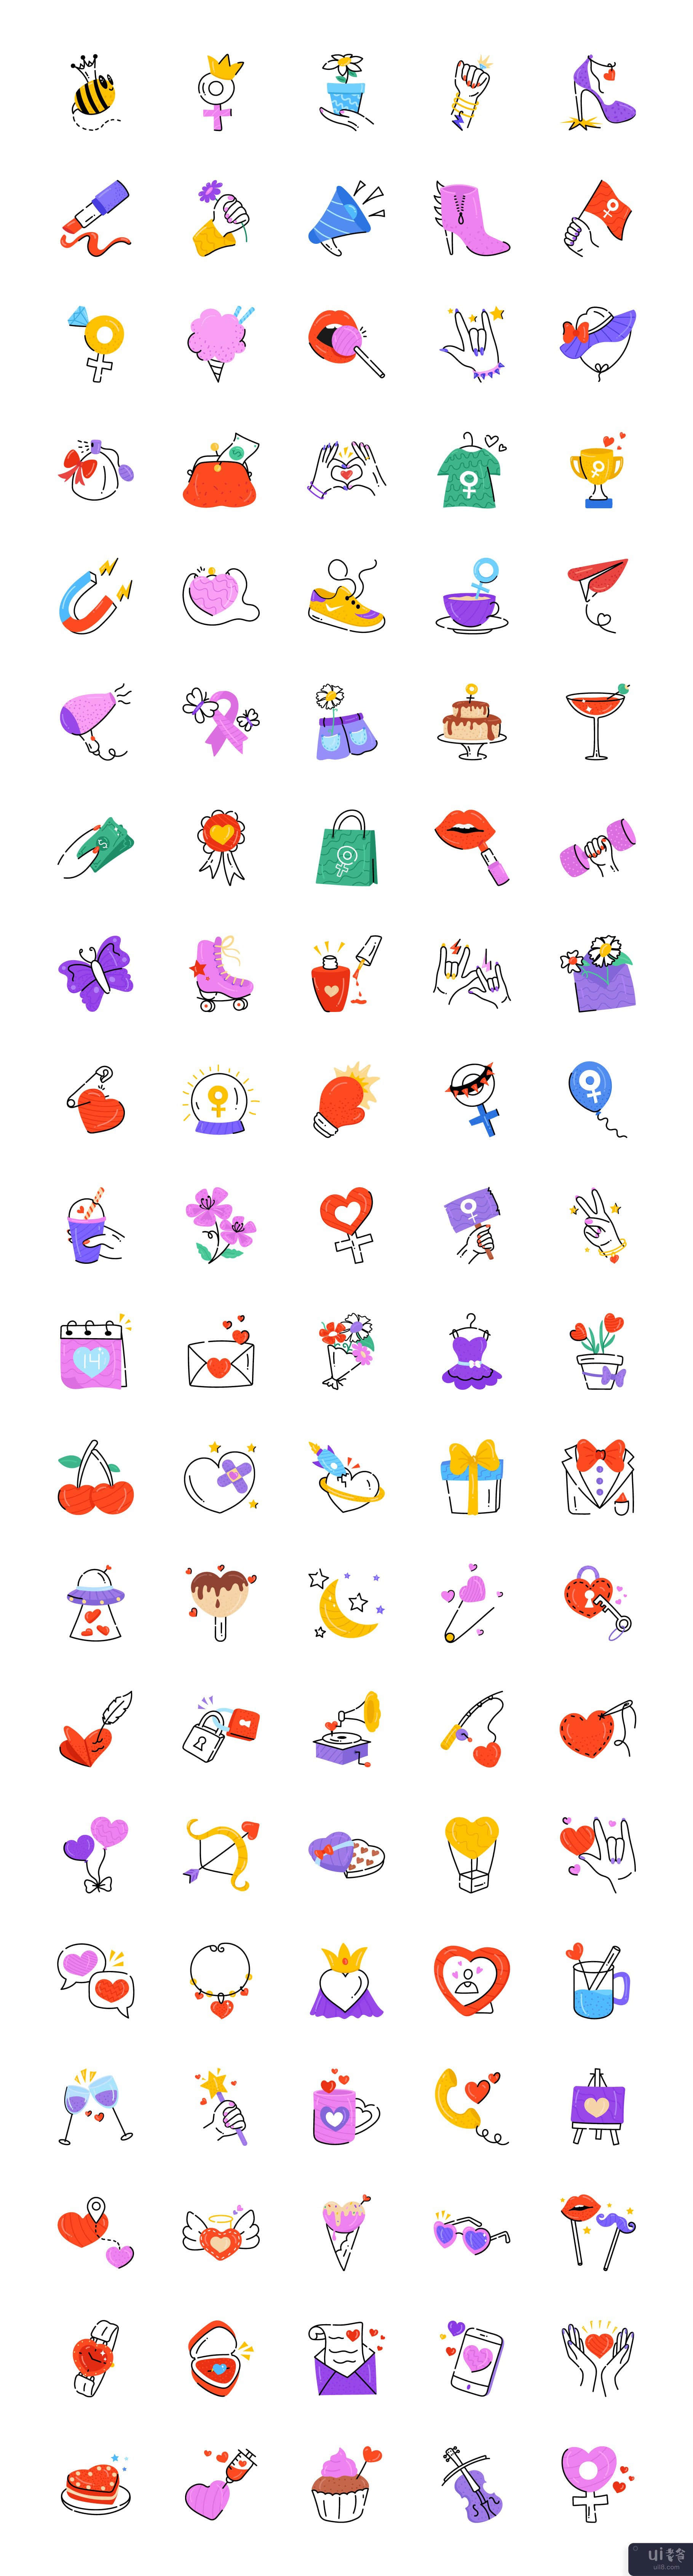 100 手绘爱情图标(100 Hand Drawn Love Icons)插图3